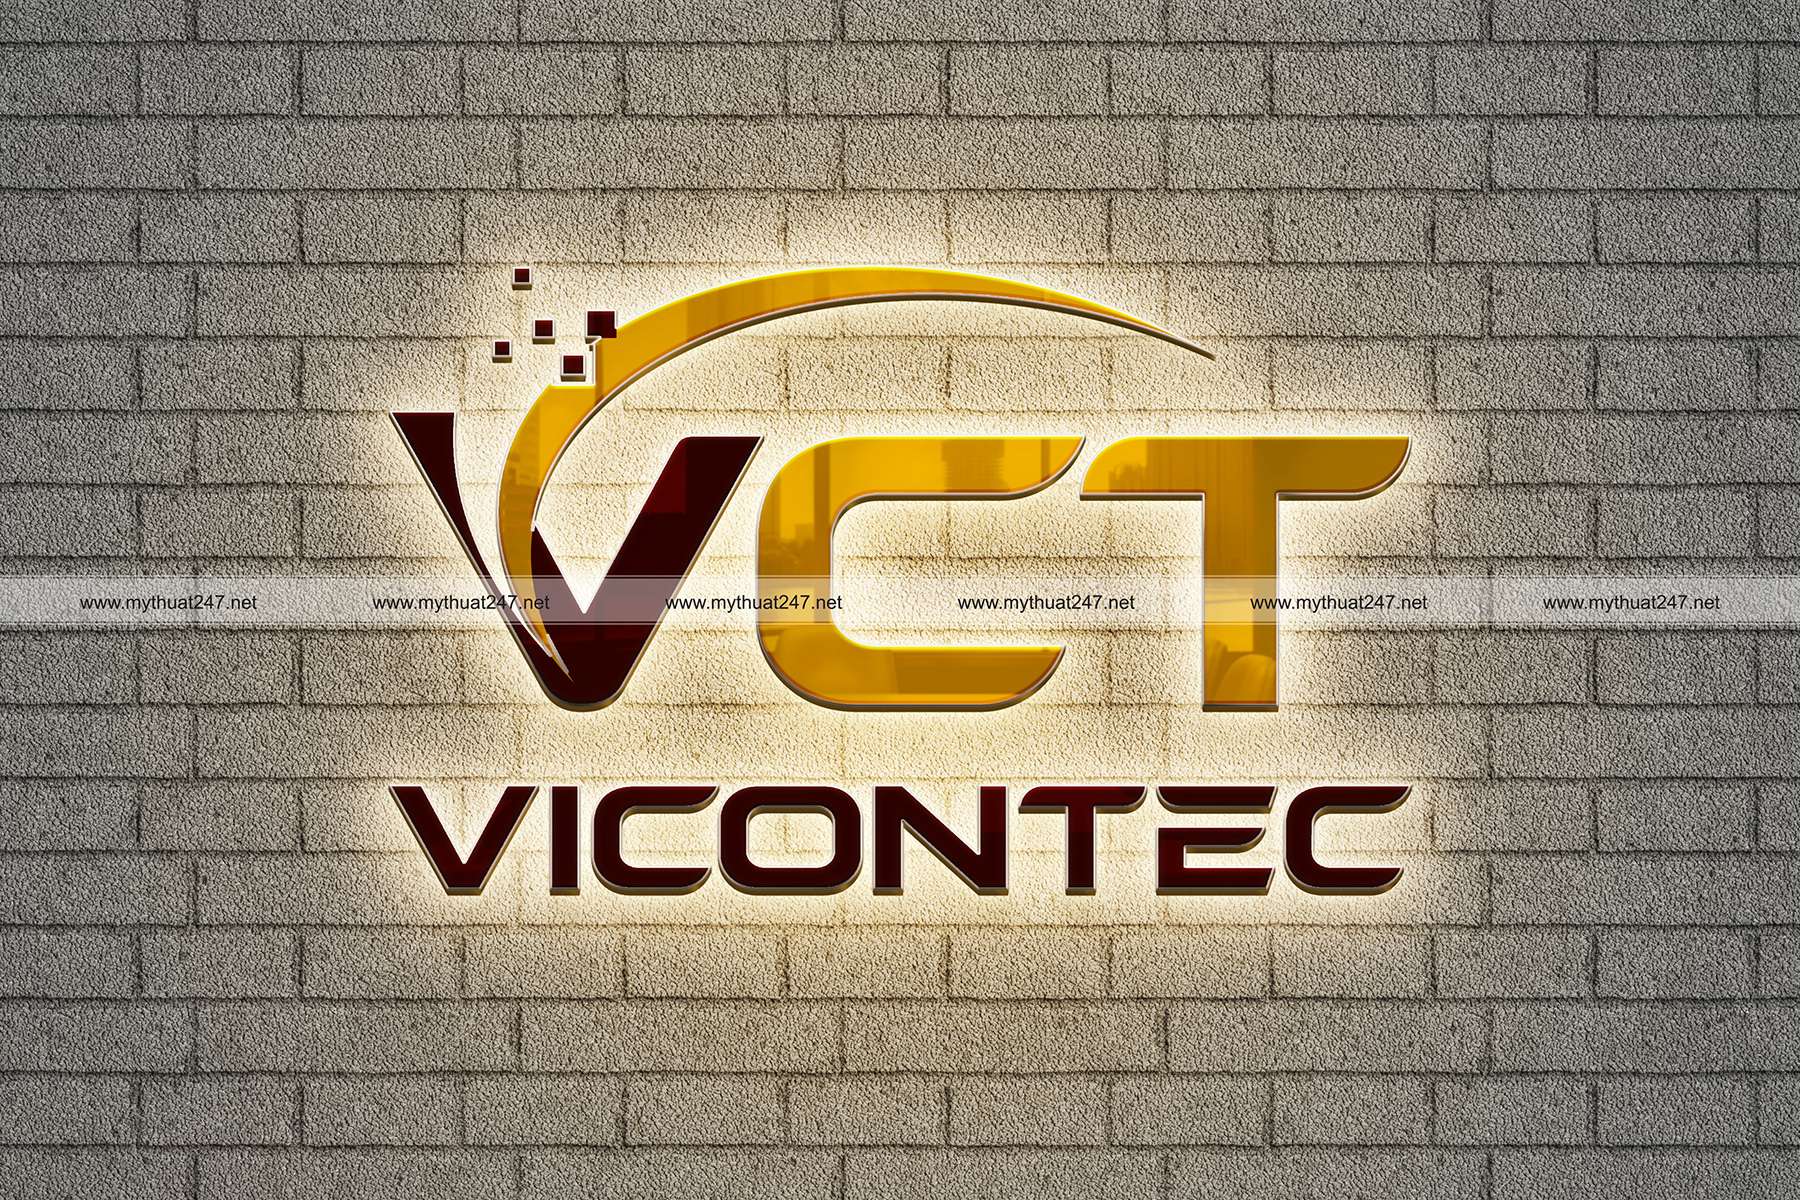 Thiết kế logo công ty tnhh thương mại kỹ thuật vicontec